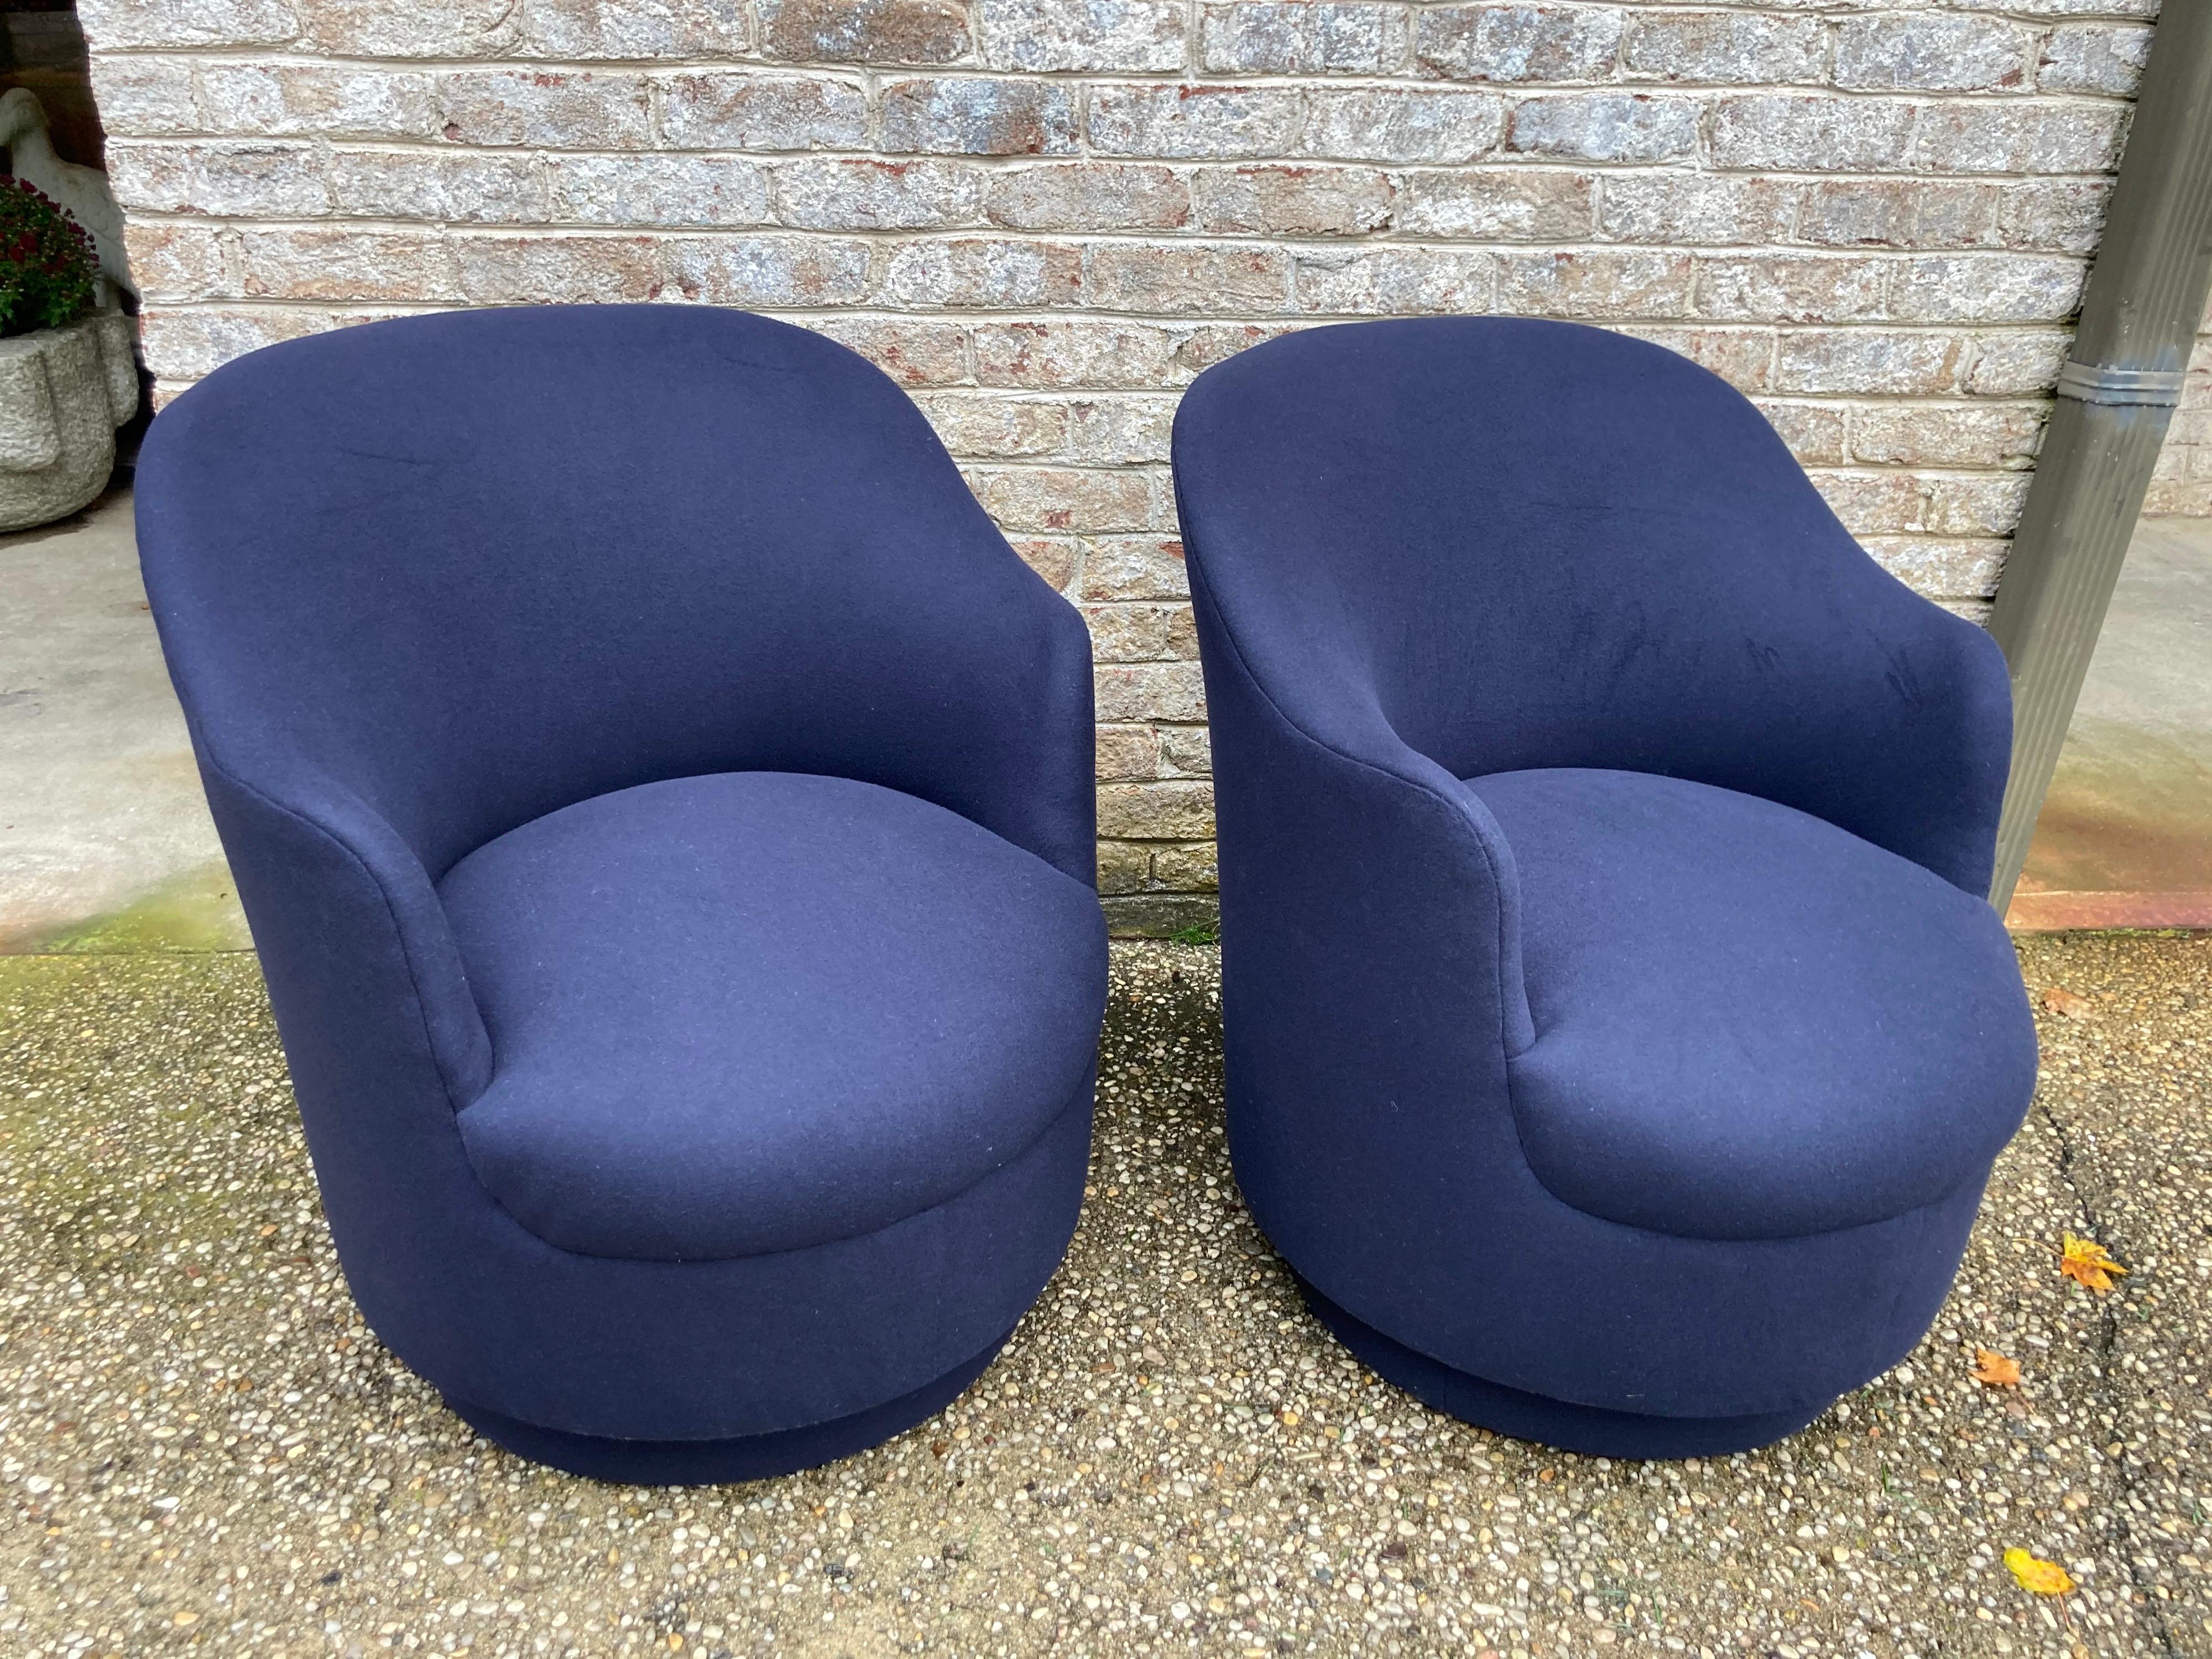 Superbe paire de fauteuils pivotants en laine/cachemire marine.... nouvellement retapissés.... attribués à Milo Baughman.... ils sont d'un vrai bleu marine même si les photos semblent plus claires....